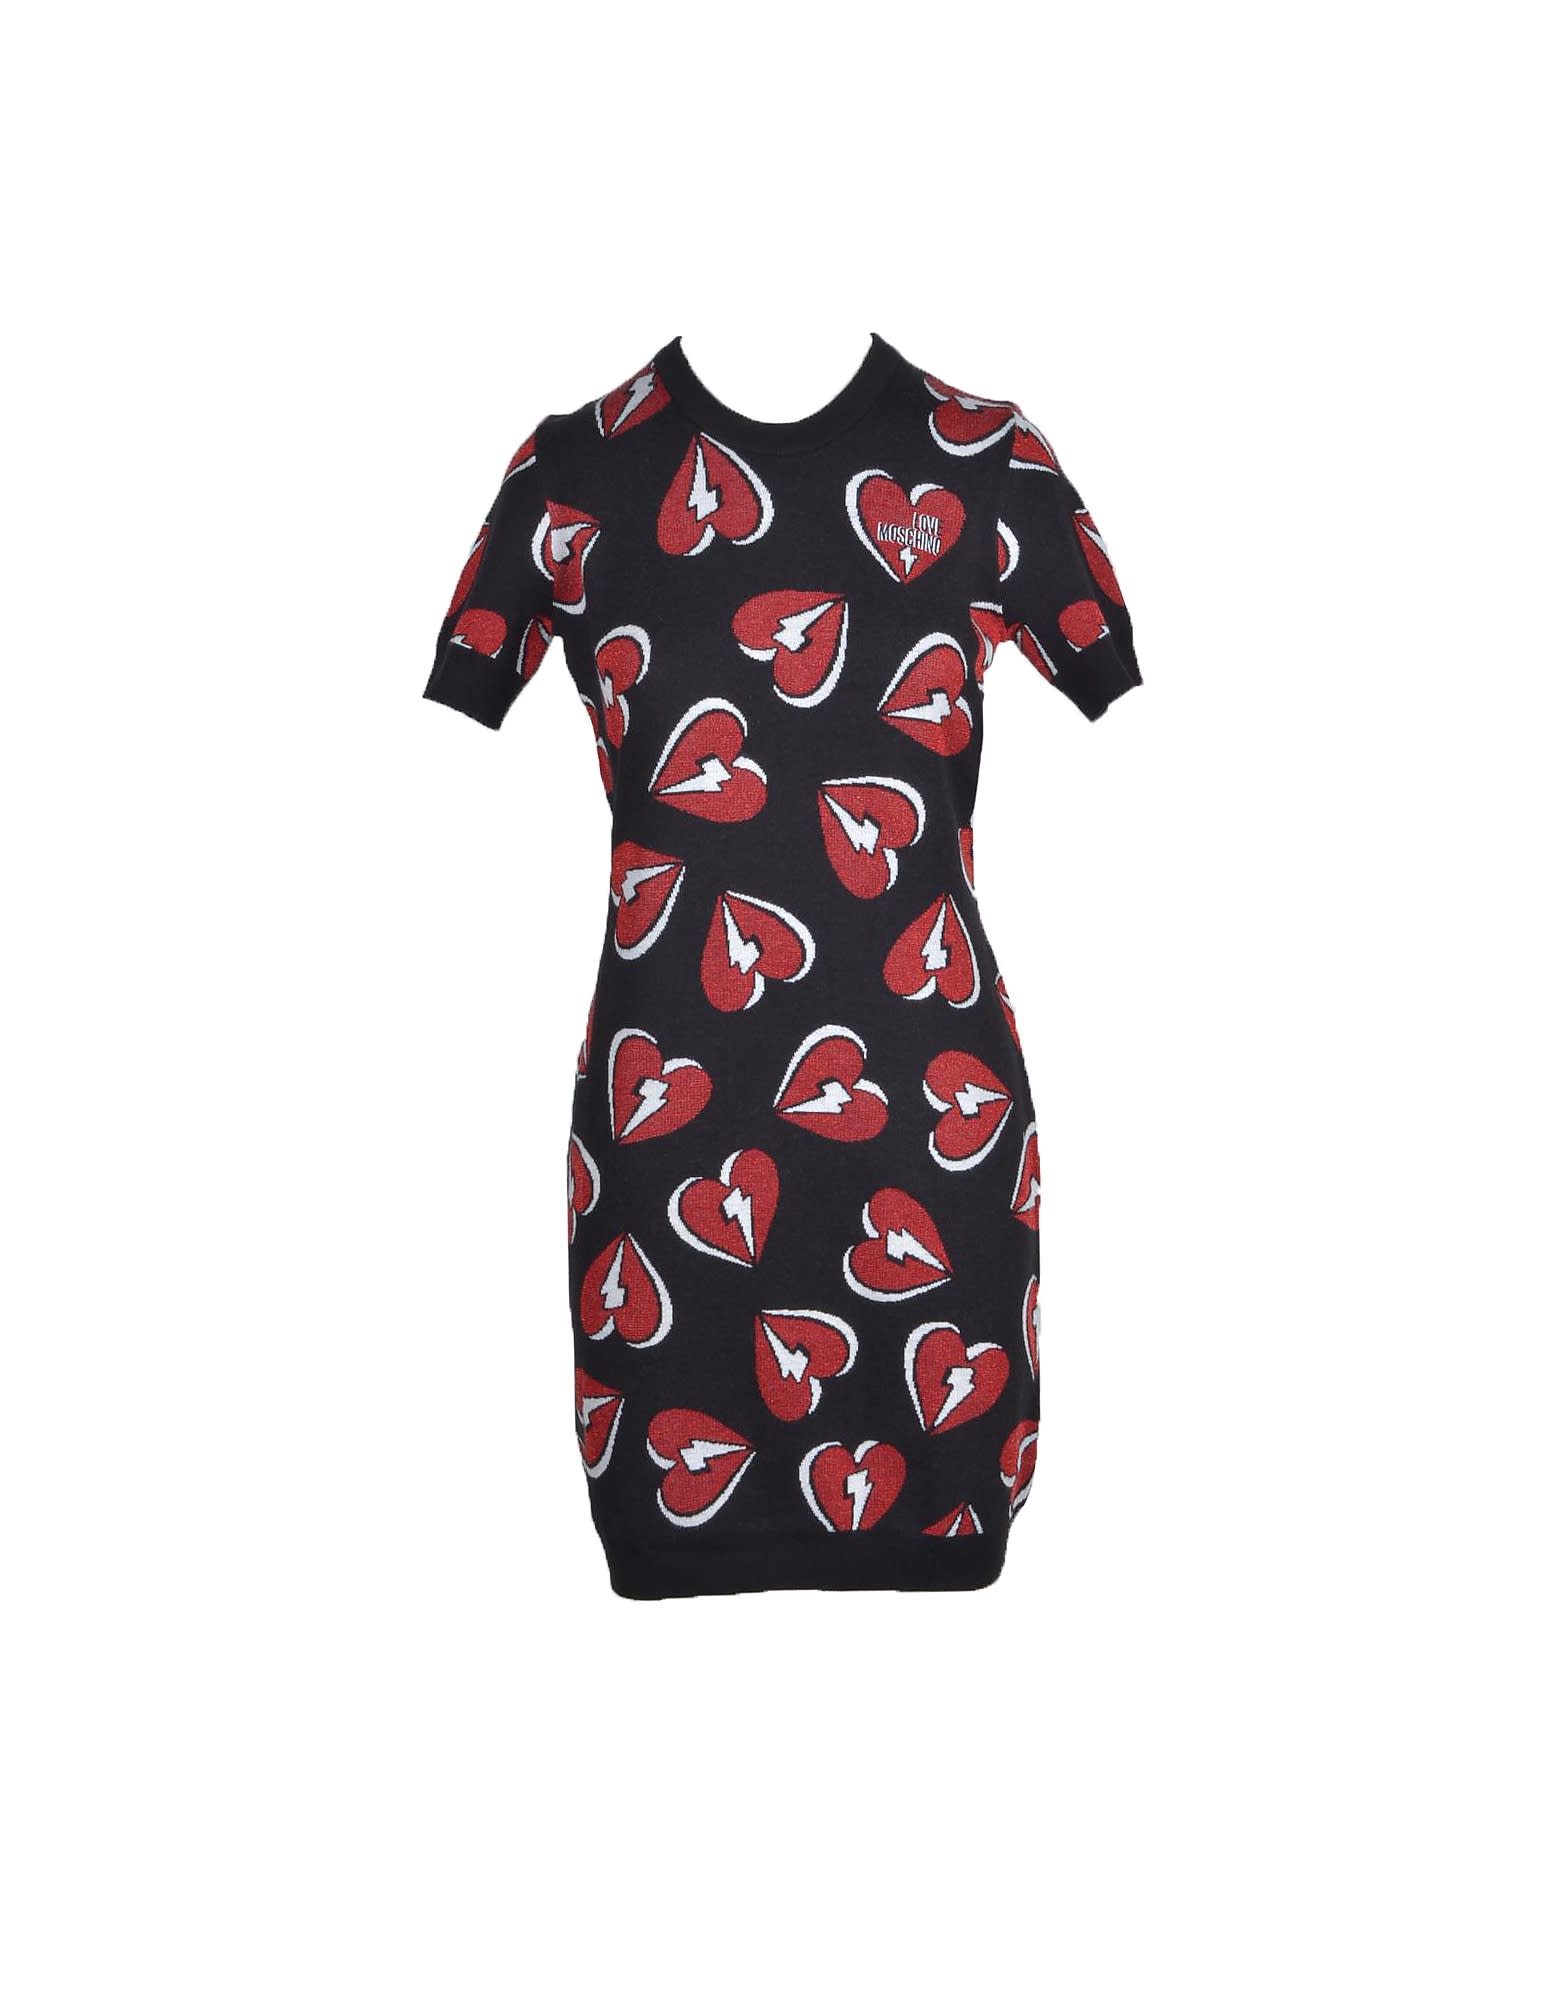 Love Moschino Womens Black Red Dress